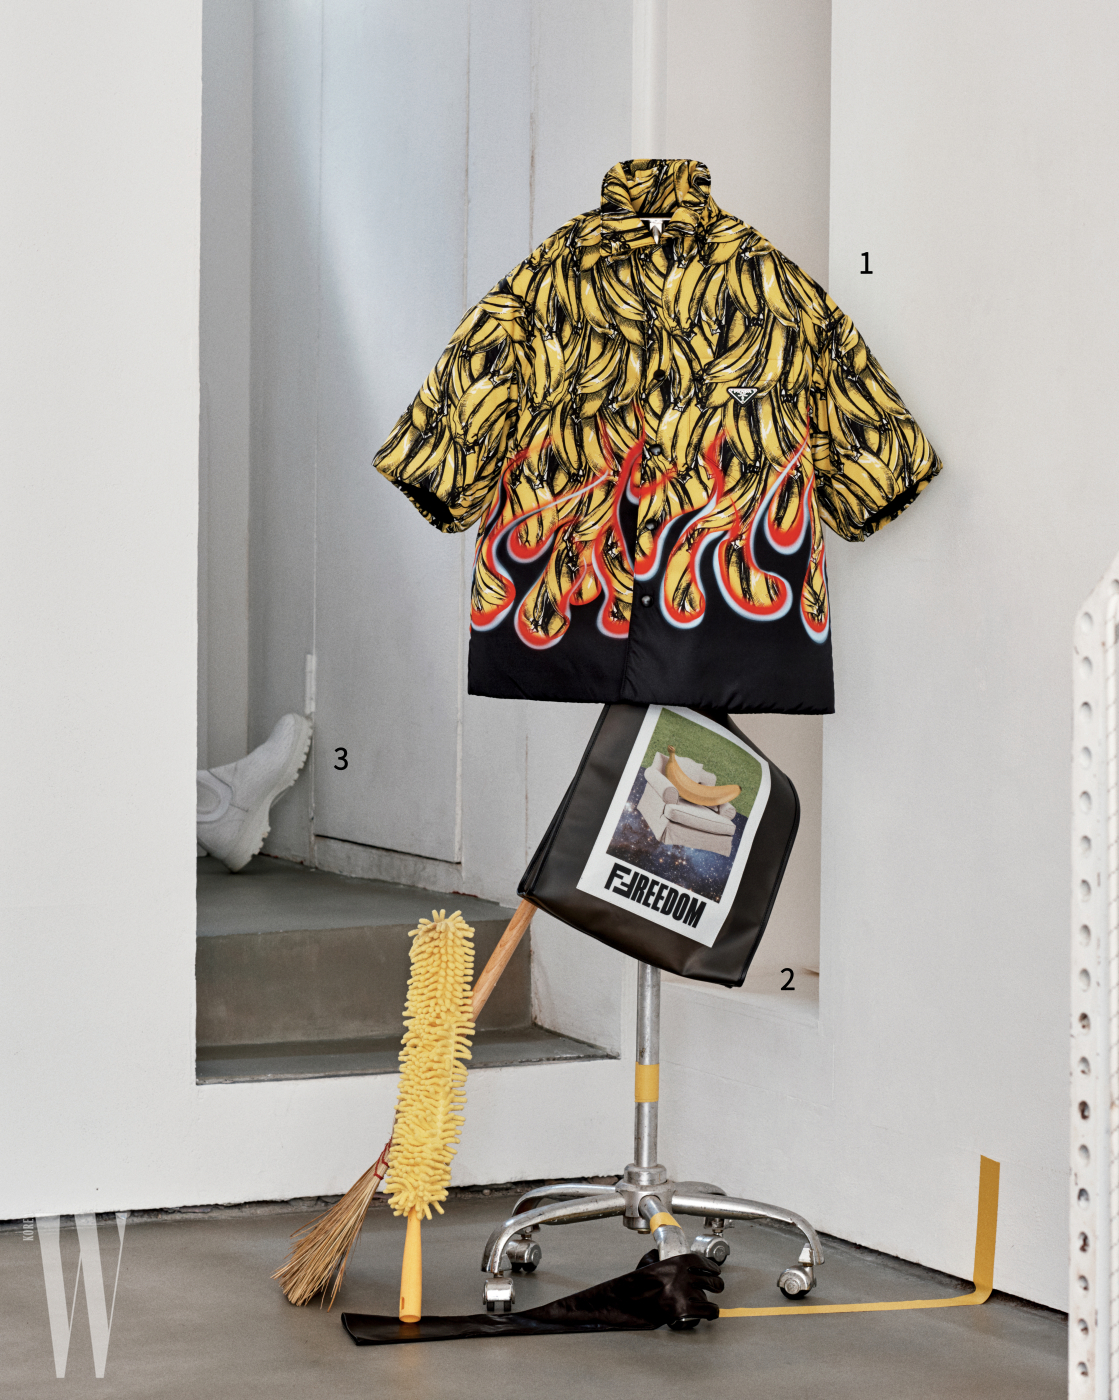 1. 바나나와 불꽃 패턴 셔츠는 프라다 제품. 가격 미정. 2. 사진과 그래픽이 콜라주된 비닐 백은 펜디 제품. 가격 미정. 3. 문 뒤에 놓인 하얀색 워커는 프라다 제품. 가격 미정.